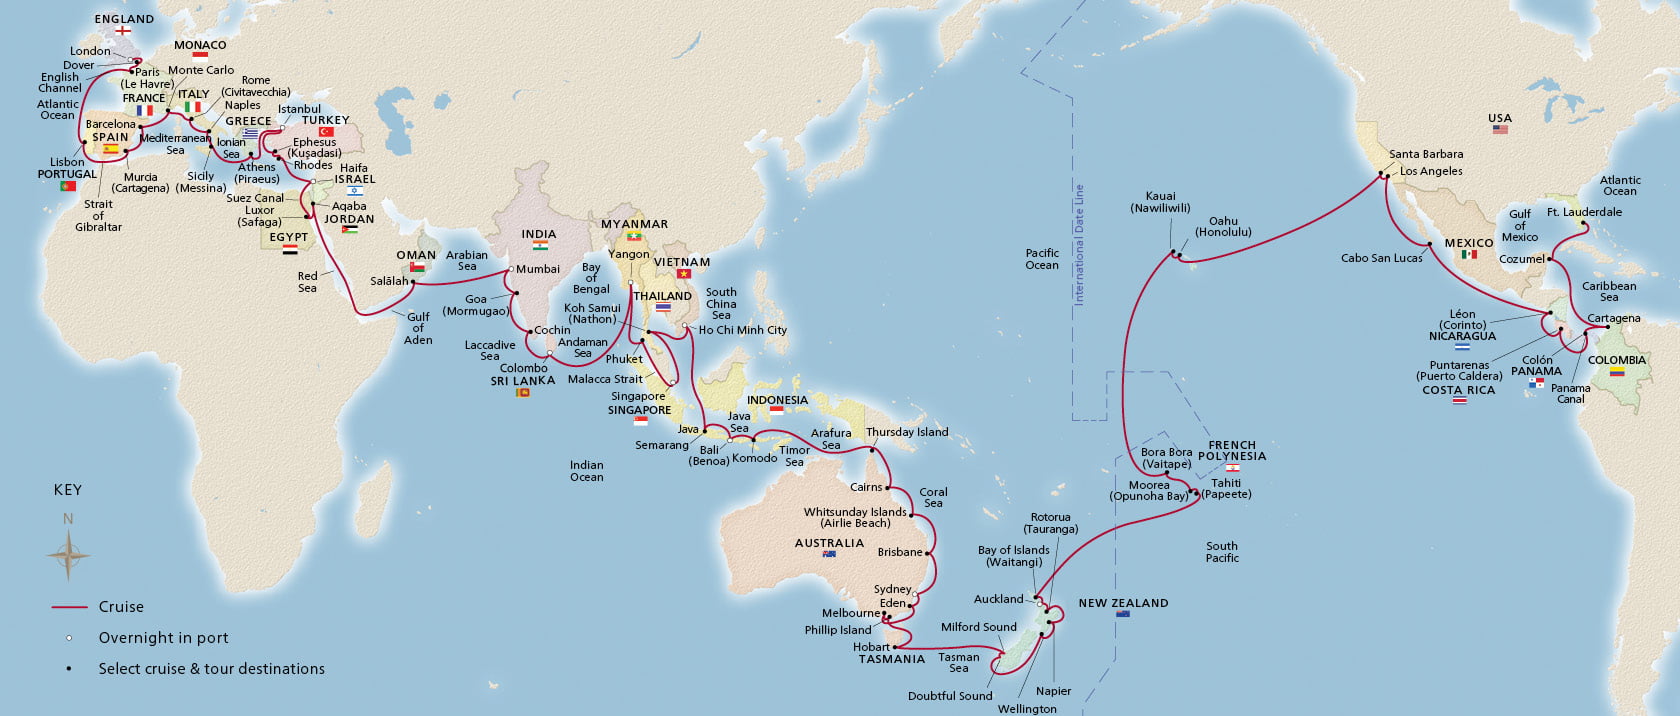 viking neptune world cruise itinerary